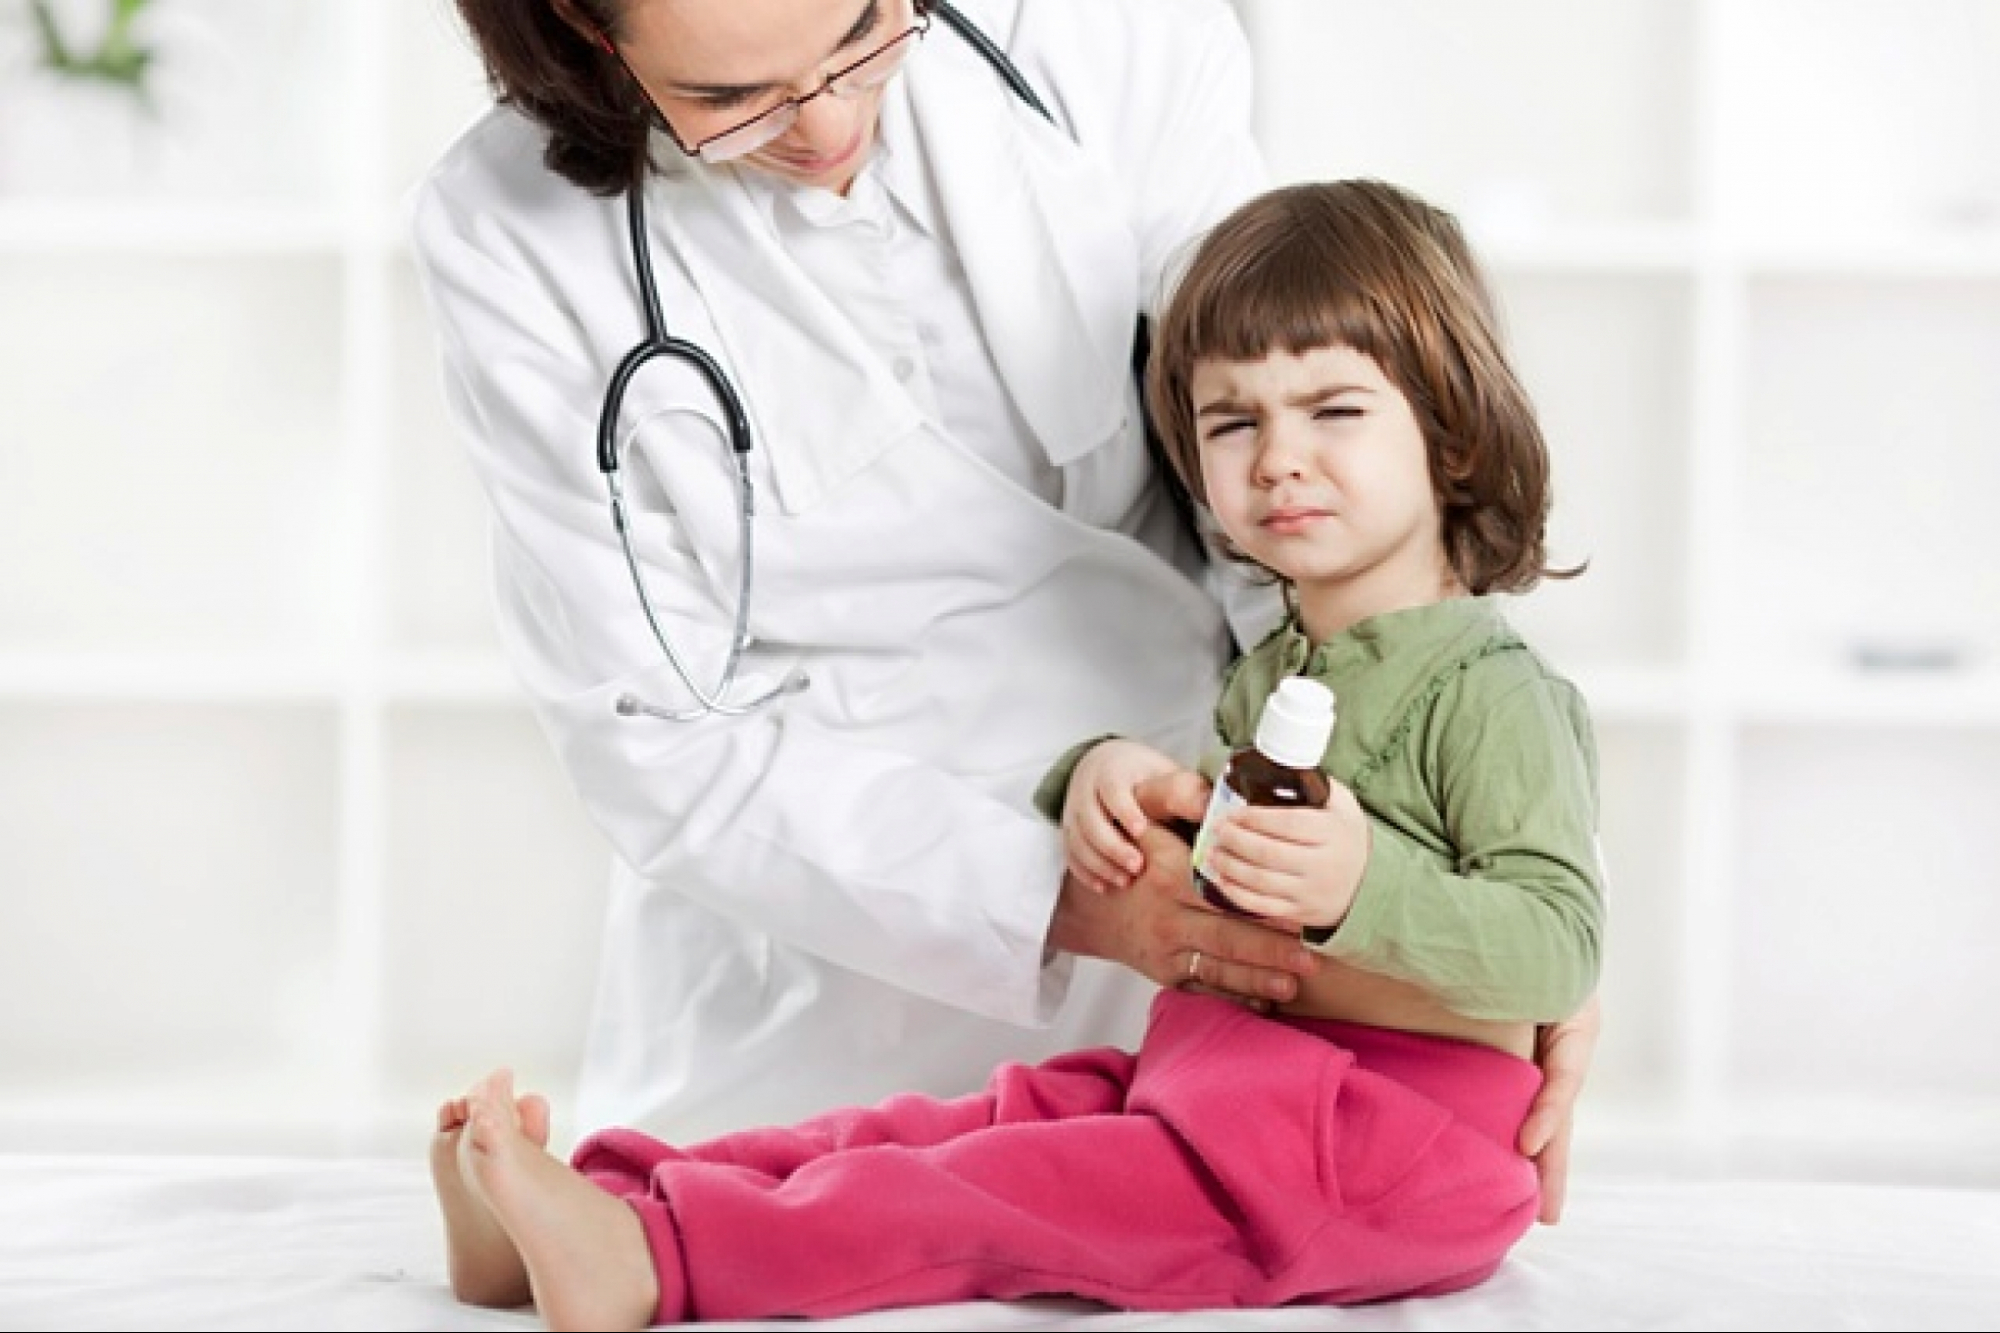 Изжога у ребенка: причины, симптоматика, диагностика, лечение, профилактика, возможные осложнения, отзывы мам - здоровая семья